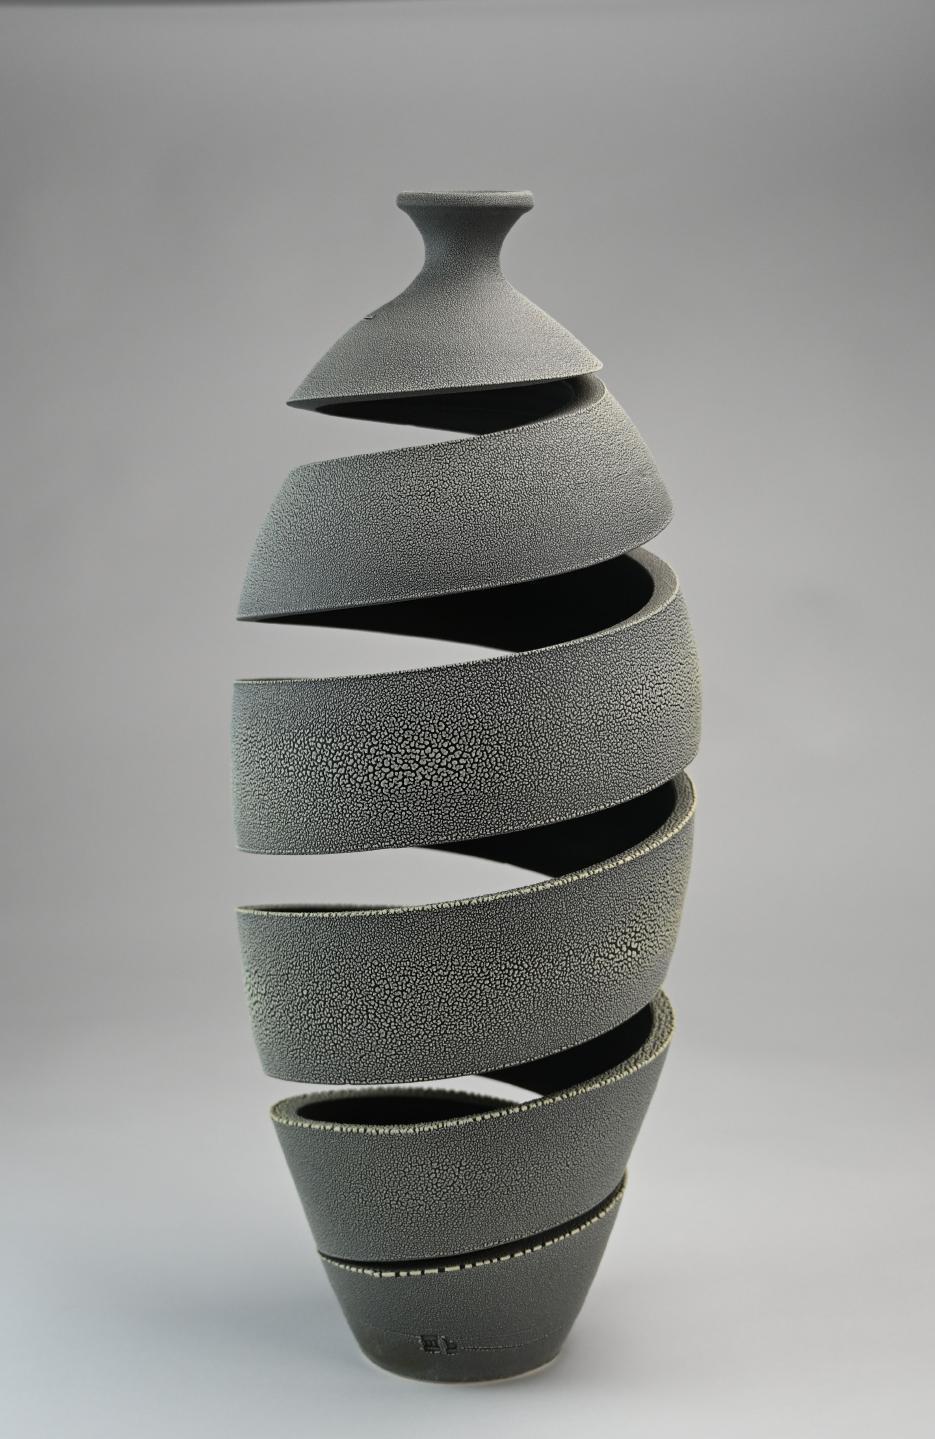 Spiralförmige Kriechspirale Keramikskulptur von Michael Boroniec - Keramik, Glasur

Die Serie 